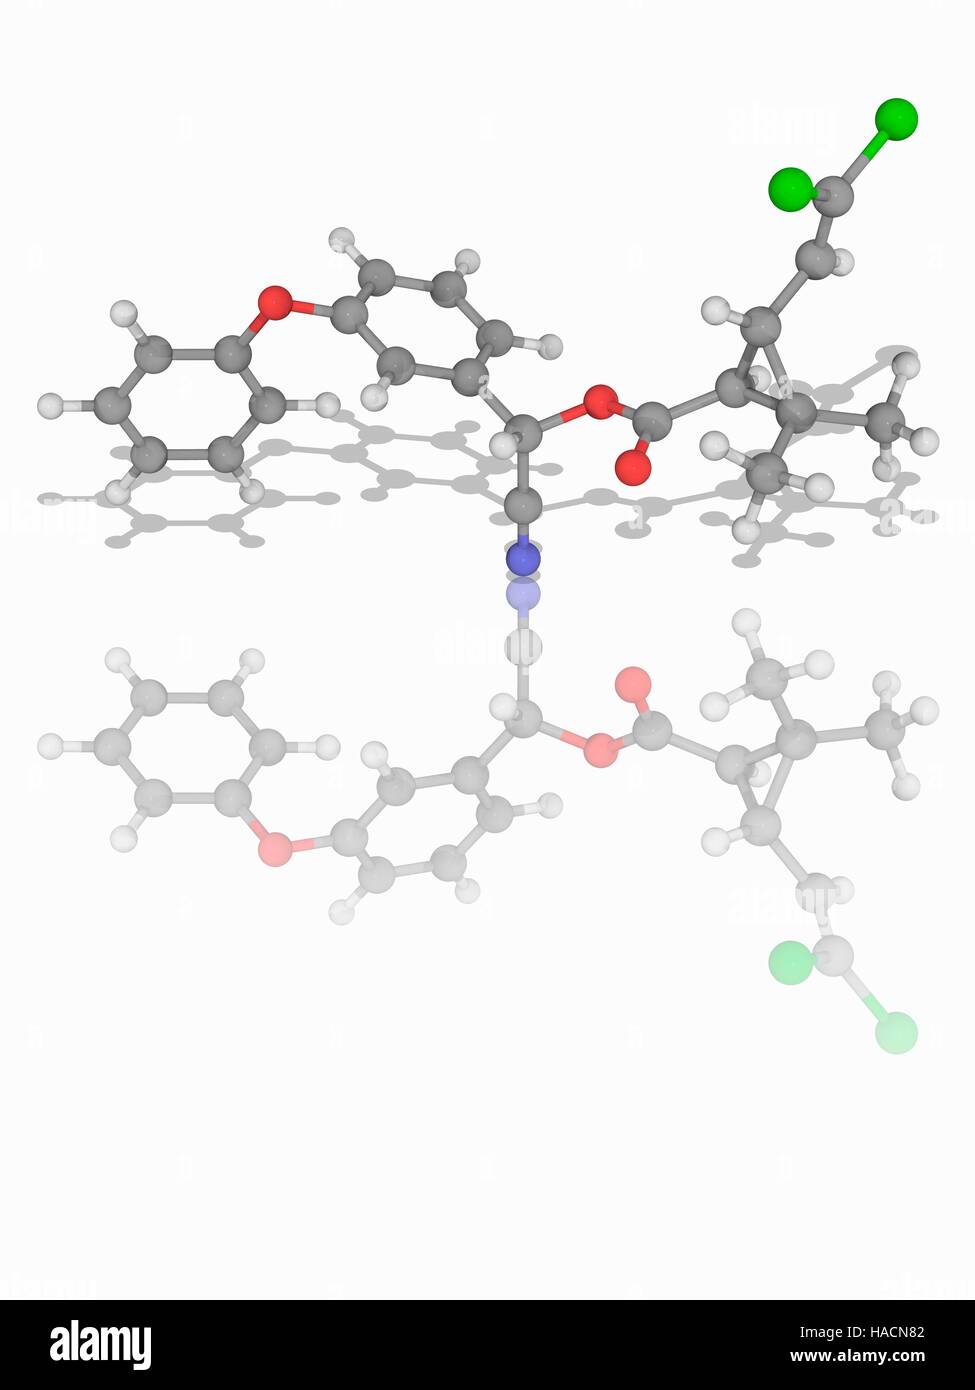 Cypermethrin. Molekulares Modell des synthetischen organischen Verbindung Cypermethrin (C22. H19. CL2.N.O3) als Insektizid verwendet. Atome als Kugeln dargestellt werden und sind farblich gekennzeichnet: Kohlenstoff (grau), Wasserstoff (weiß), Stickstoff (blau), Sauerstoff (rot) und Chlor (grün). Abbildung. Stockfoto